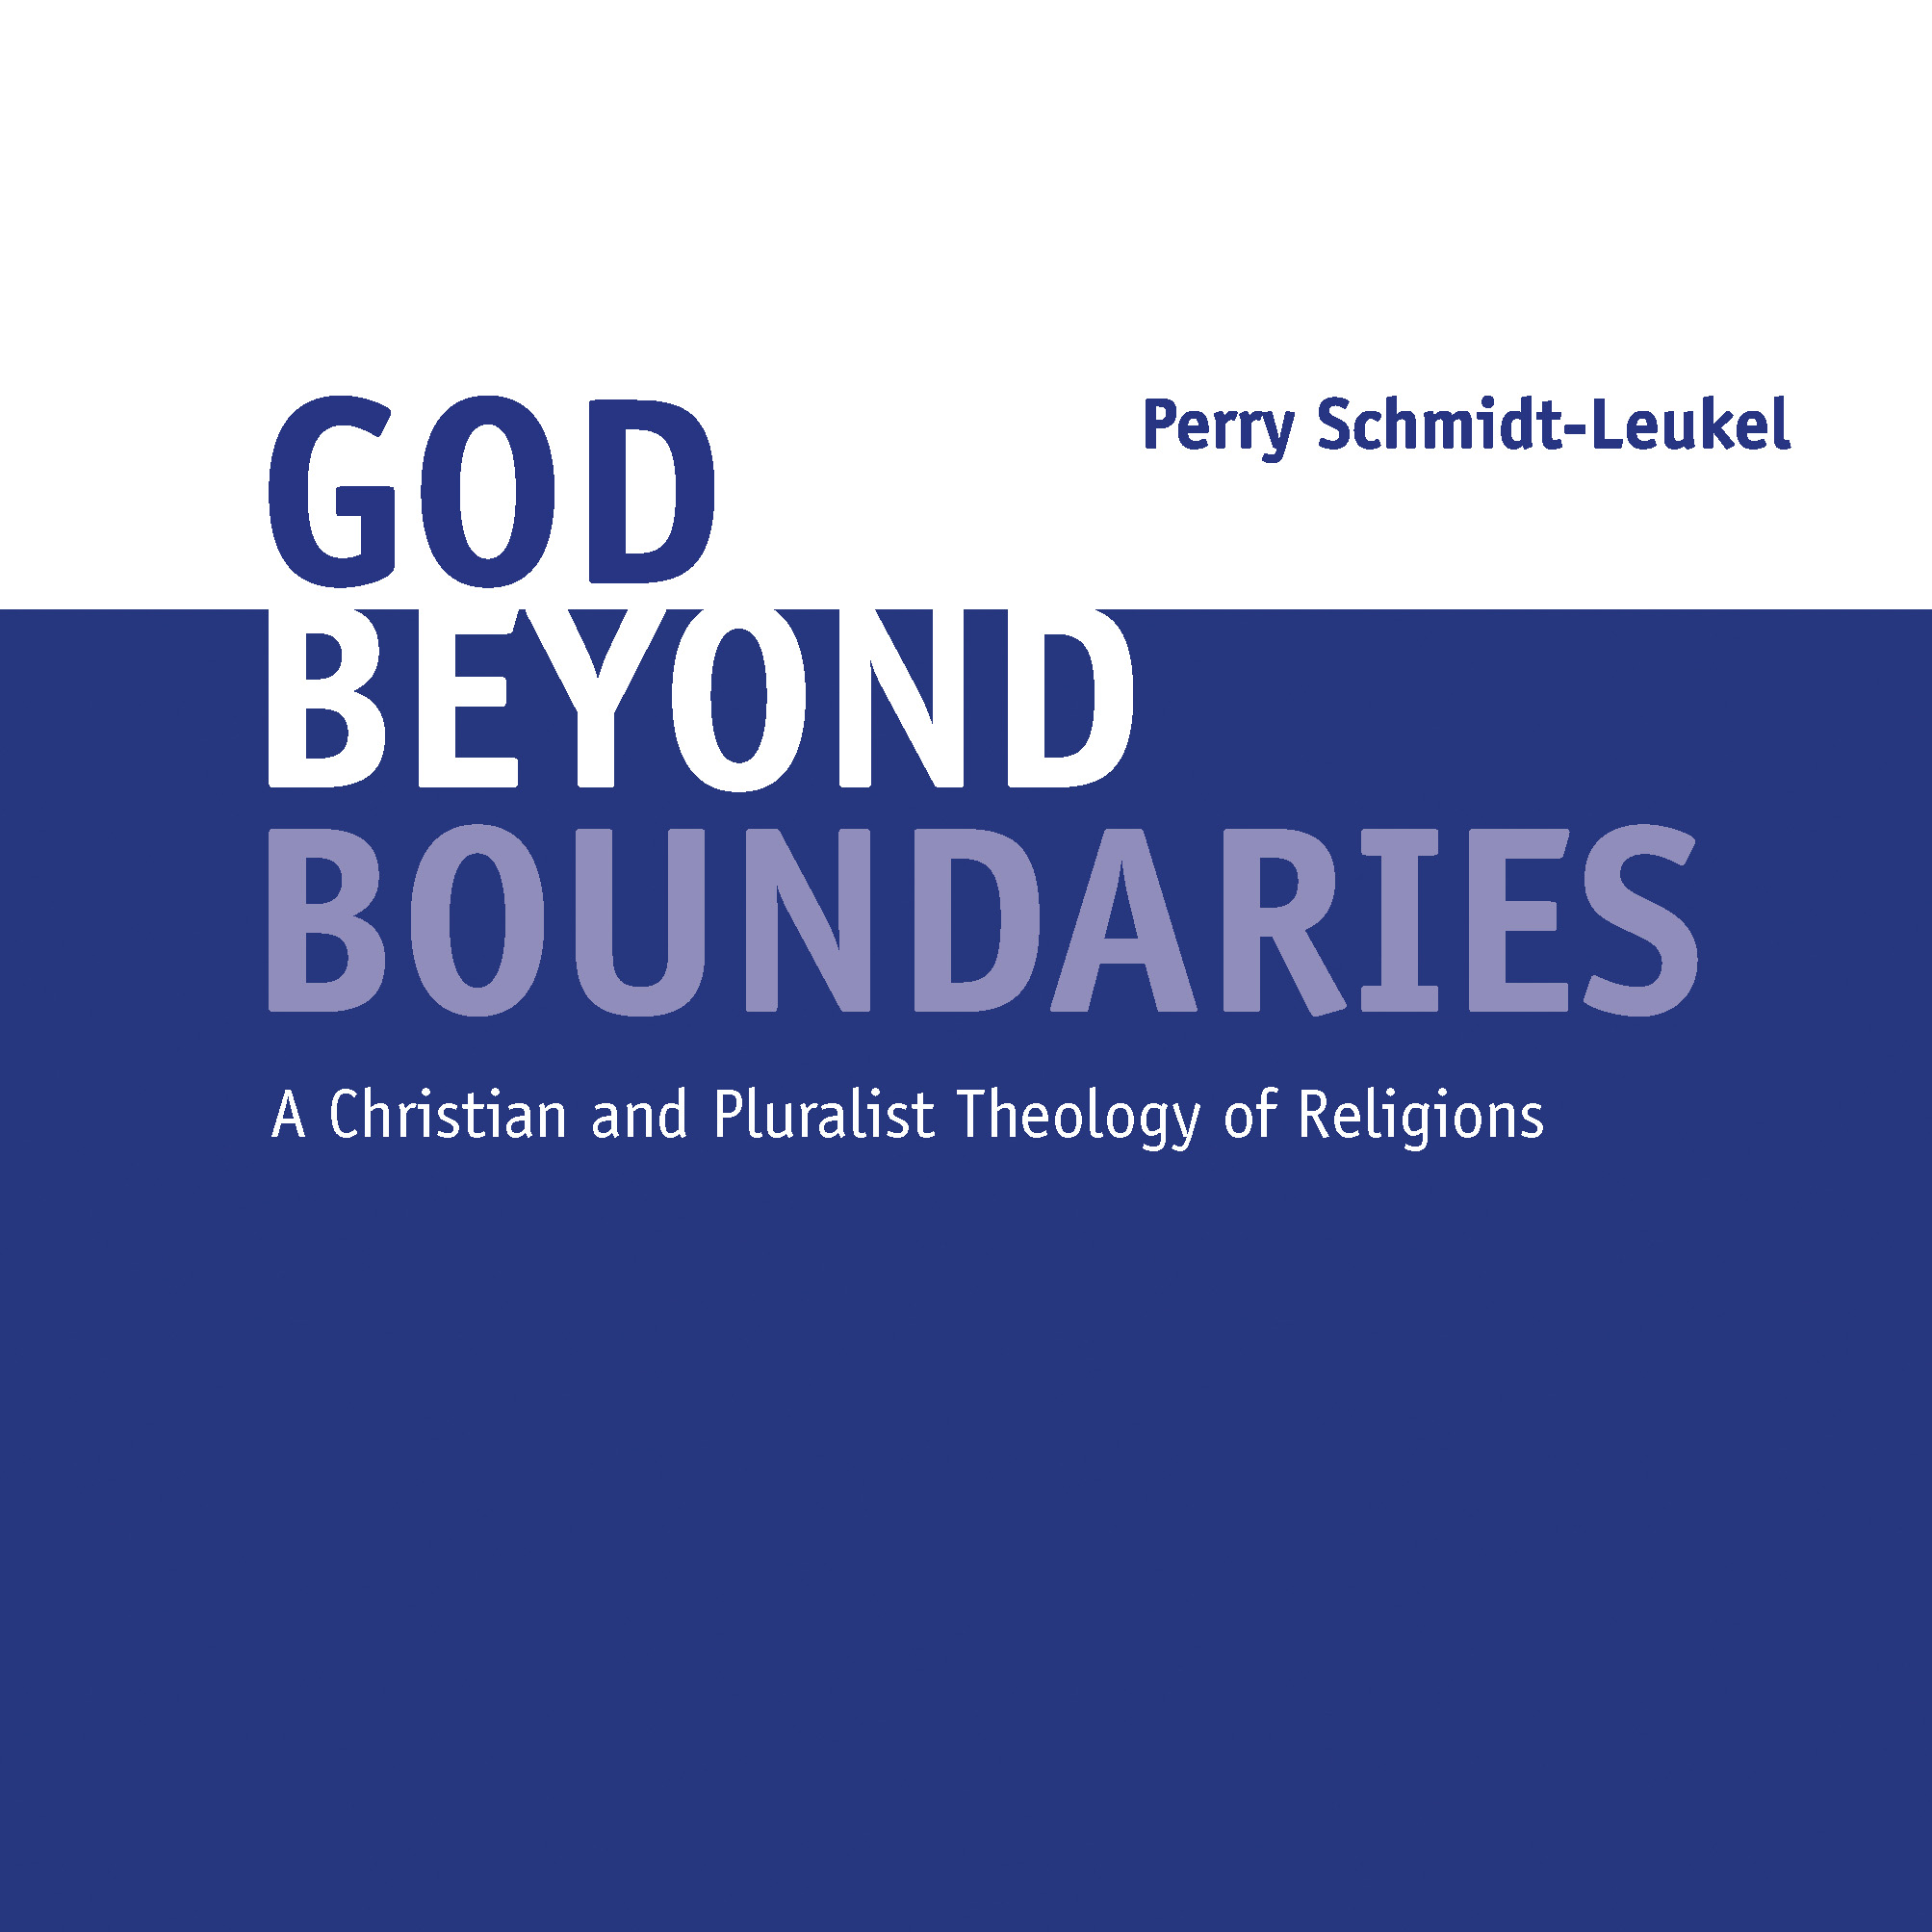 News Buch Schmidt-leukel God Beyond Boundaries 1 1